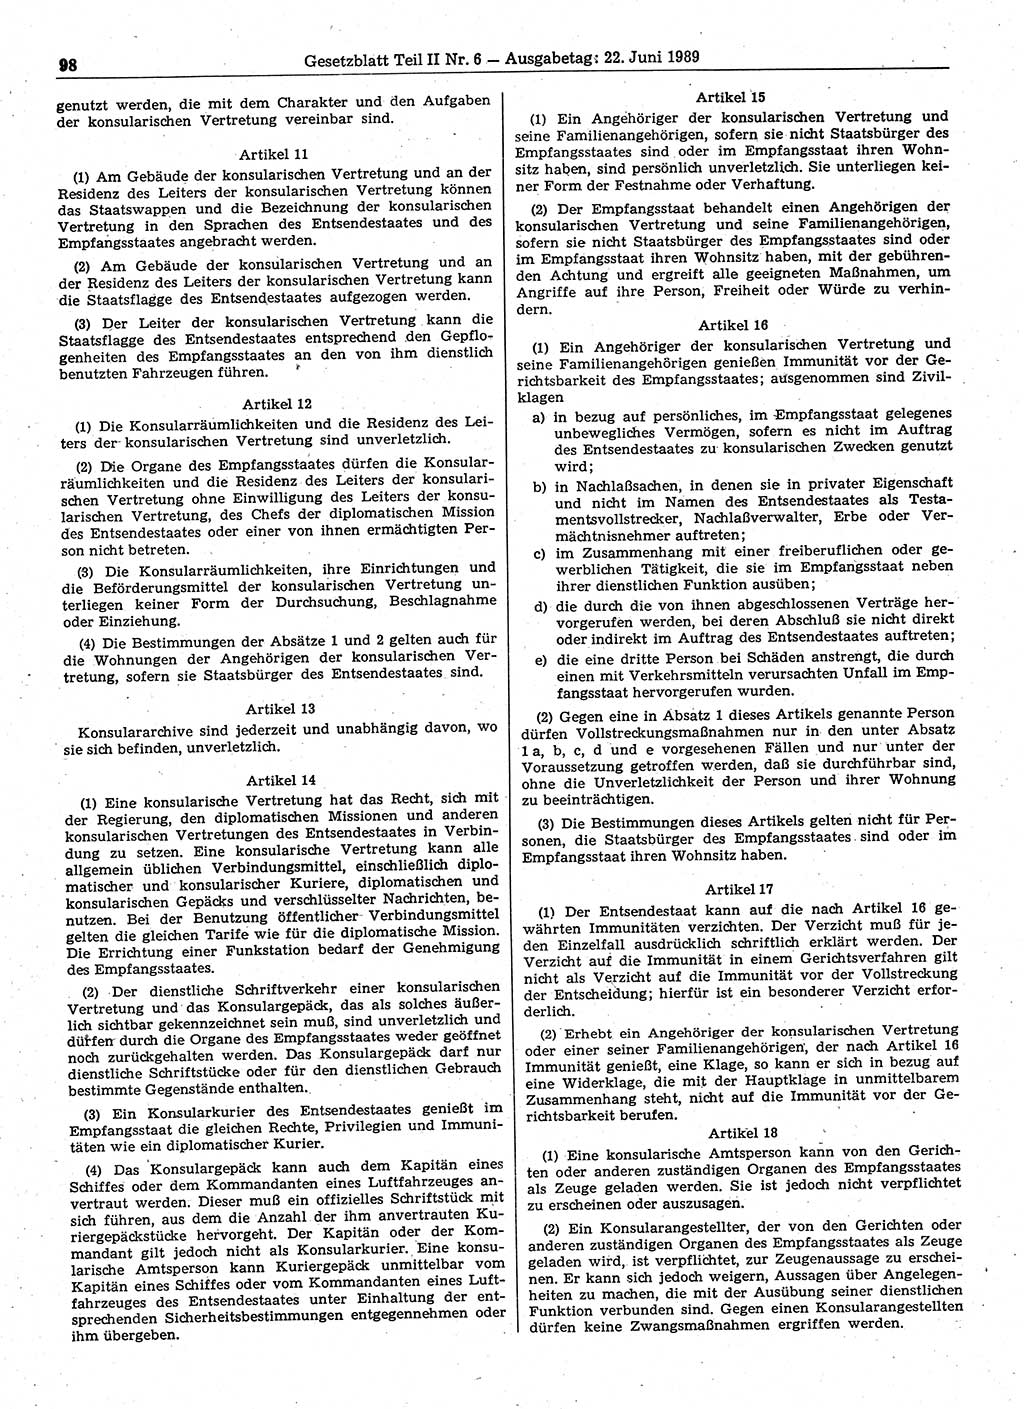 Gesetzblatt (GBl.) der Deutschen Demokratischen Republik (DDR) Teil ⅠⅠ 1989, Seite 98 (GBl. DDR ⅠⅠ 1989, S. 98)